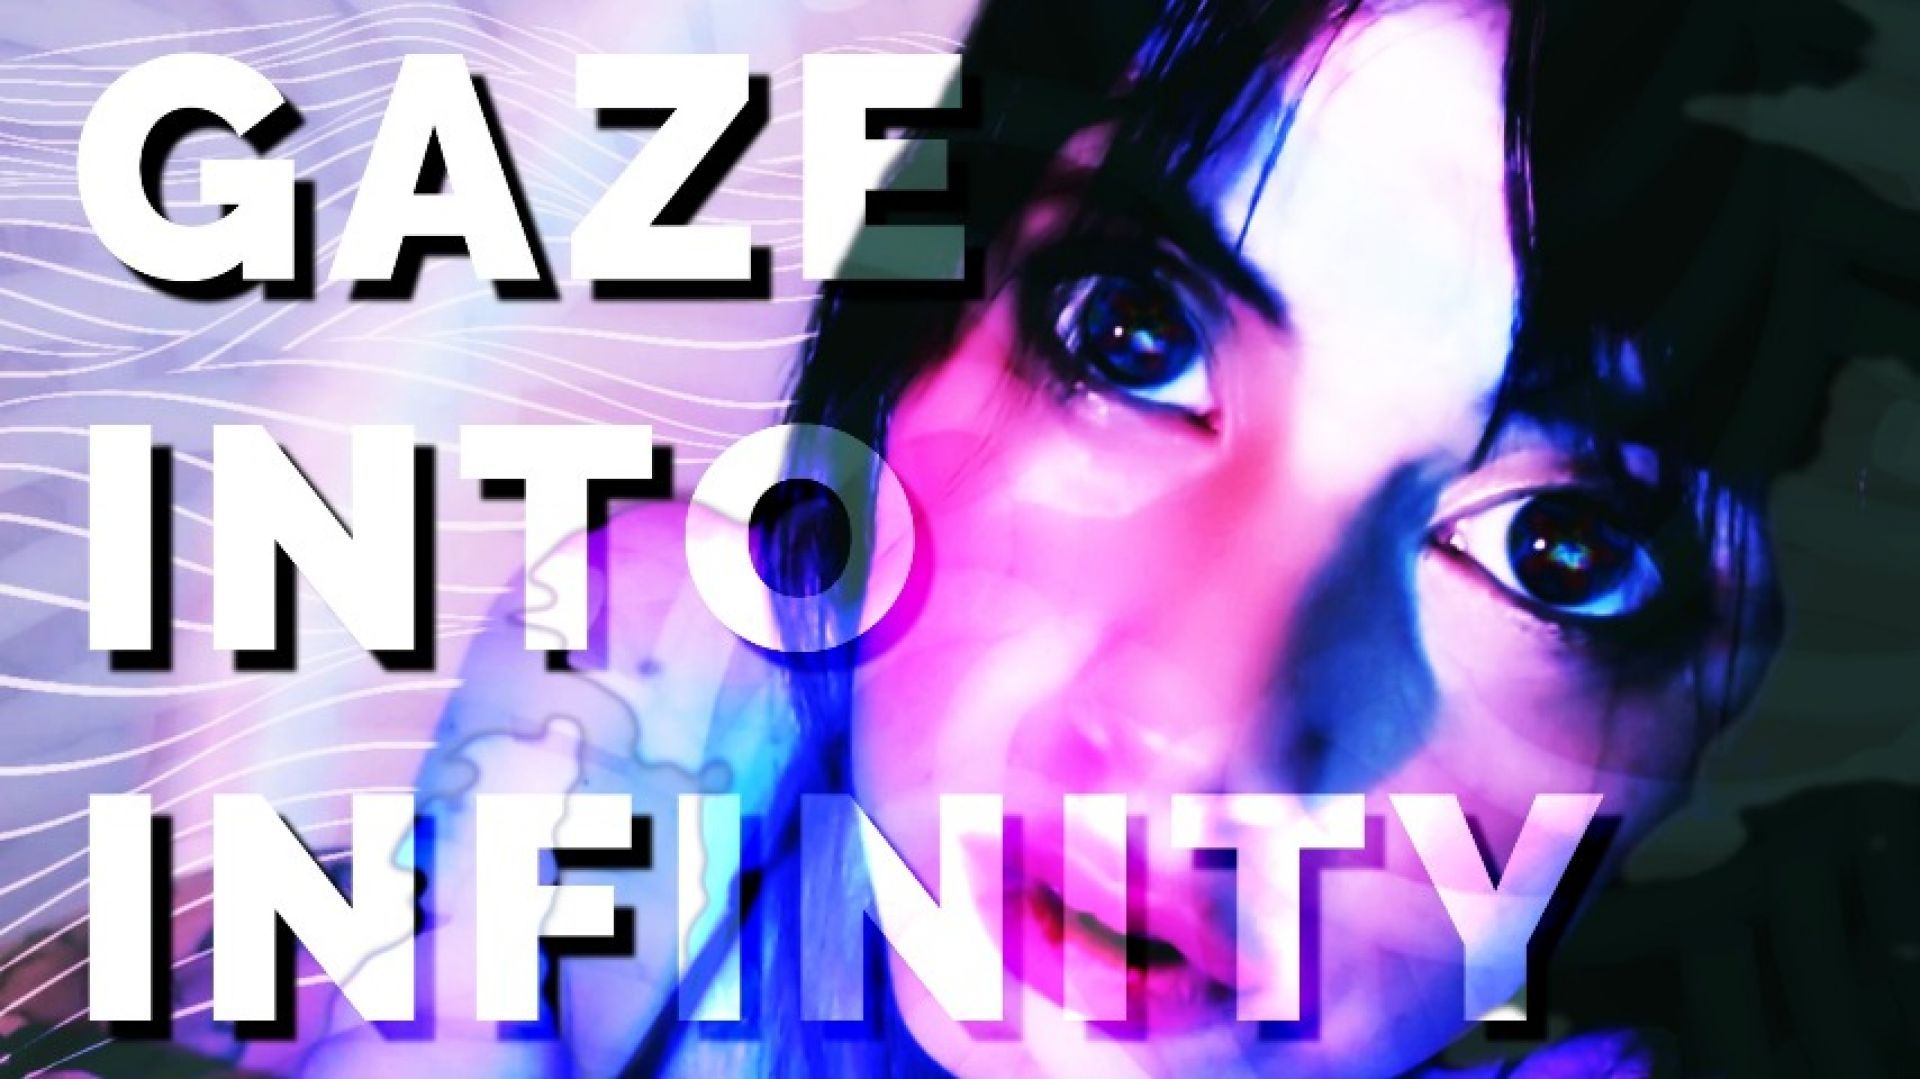 Gaze Into Infinity